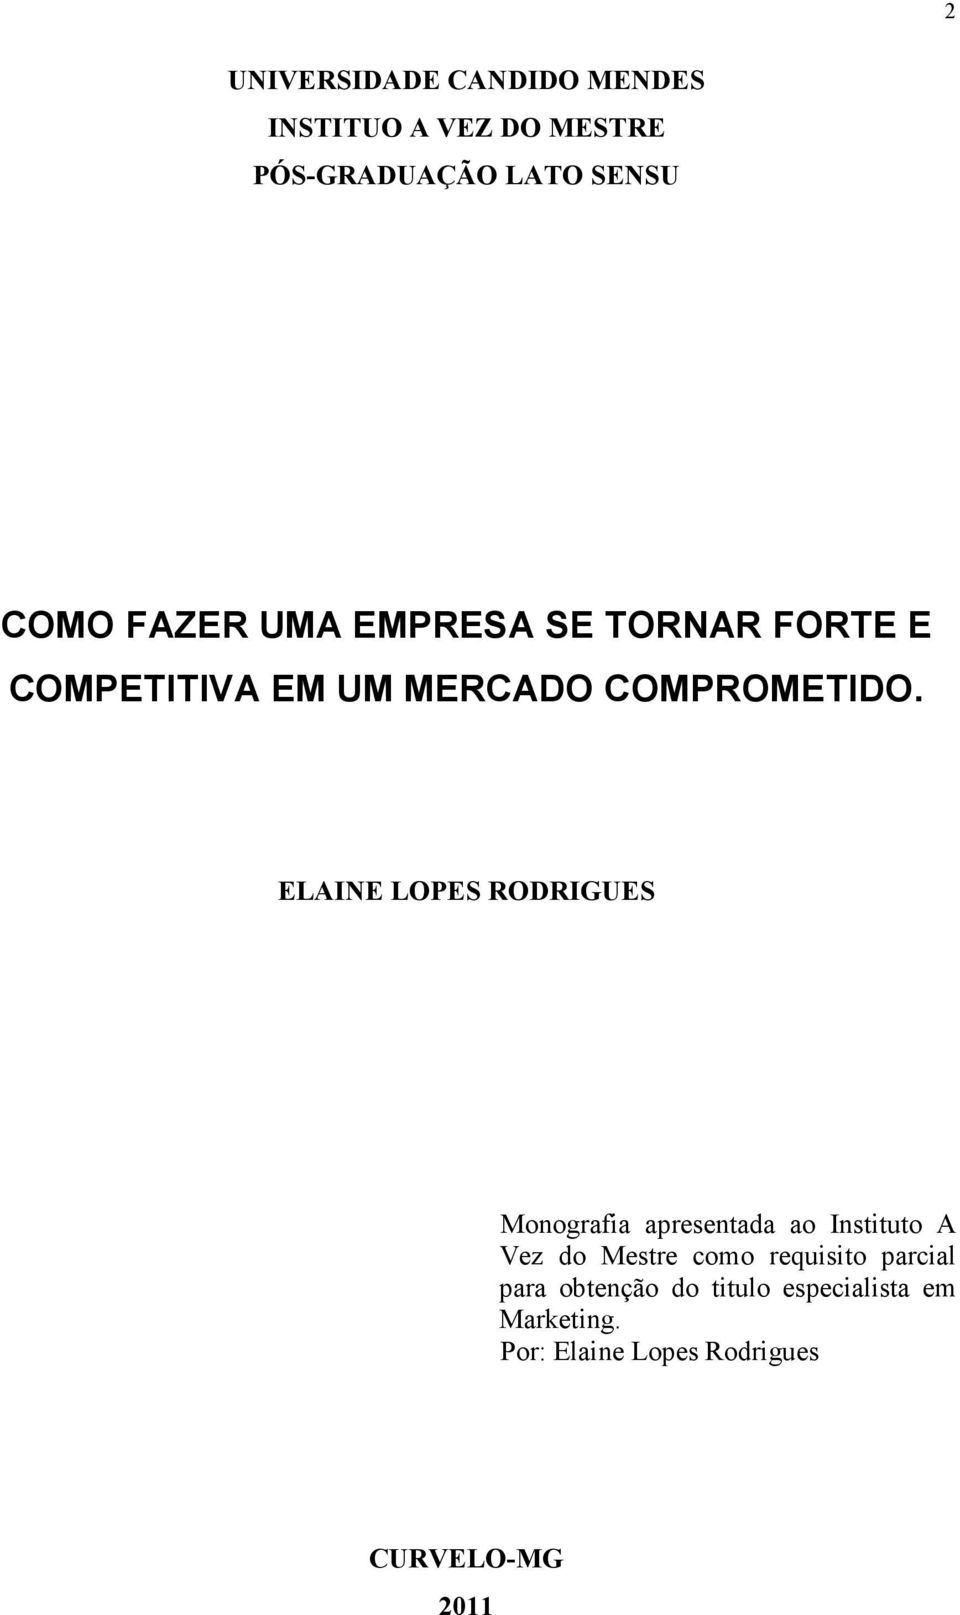 ELAINE LOPES RODRIGUES Monografia apresentada ao Instituto A Vez do Mestre como